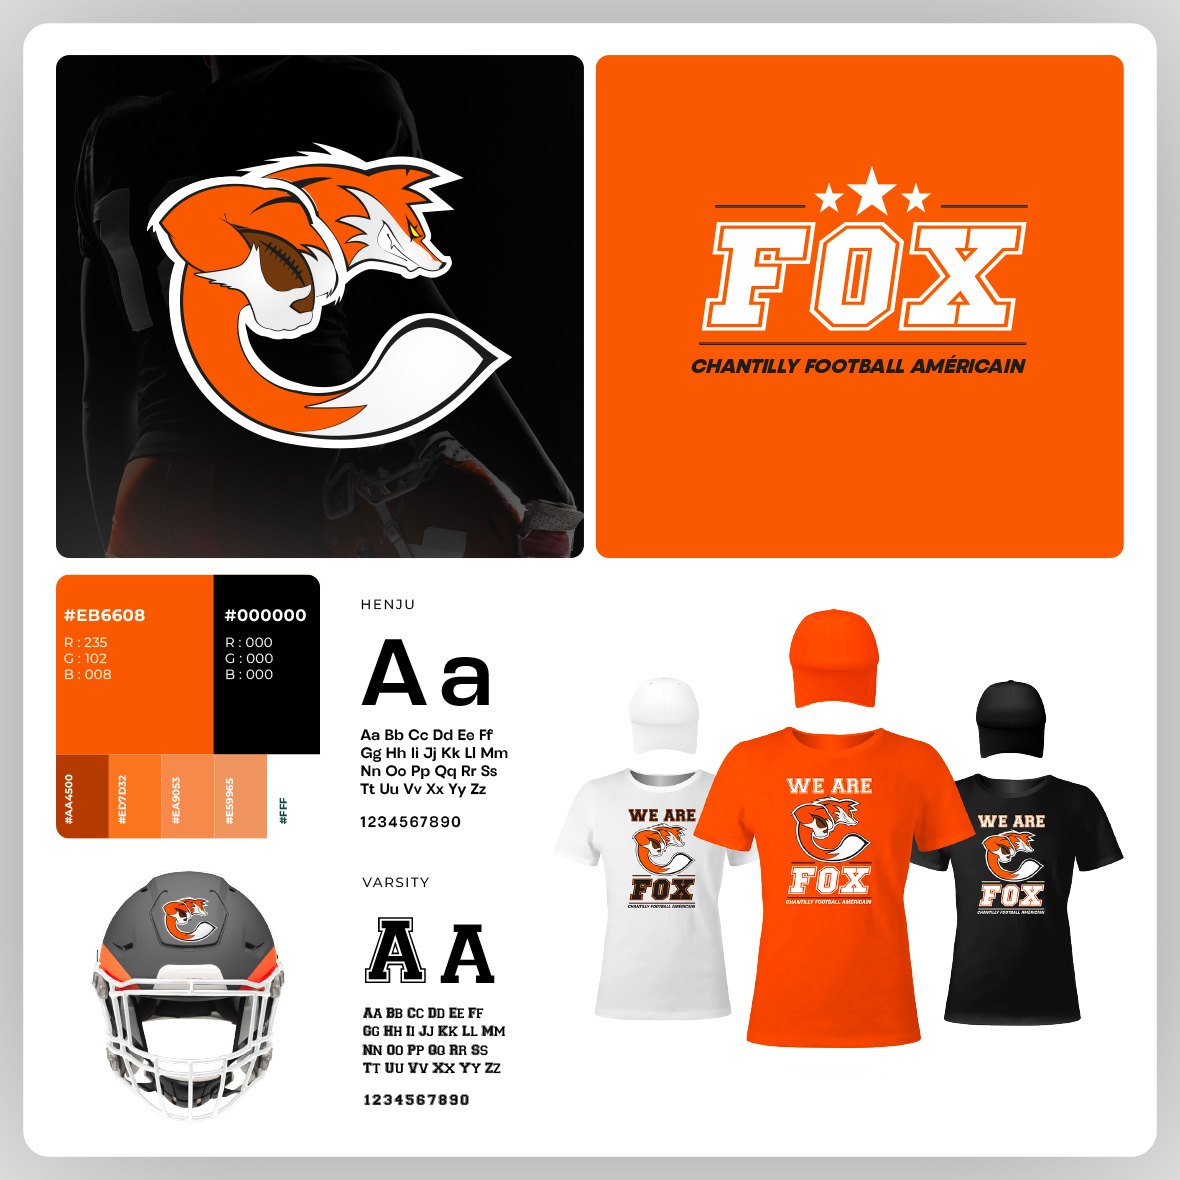 Visuel de présentation du logo des Fox de Chantilly